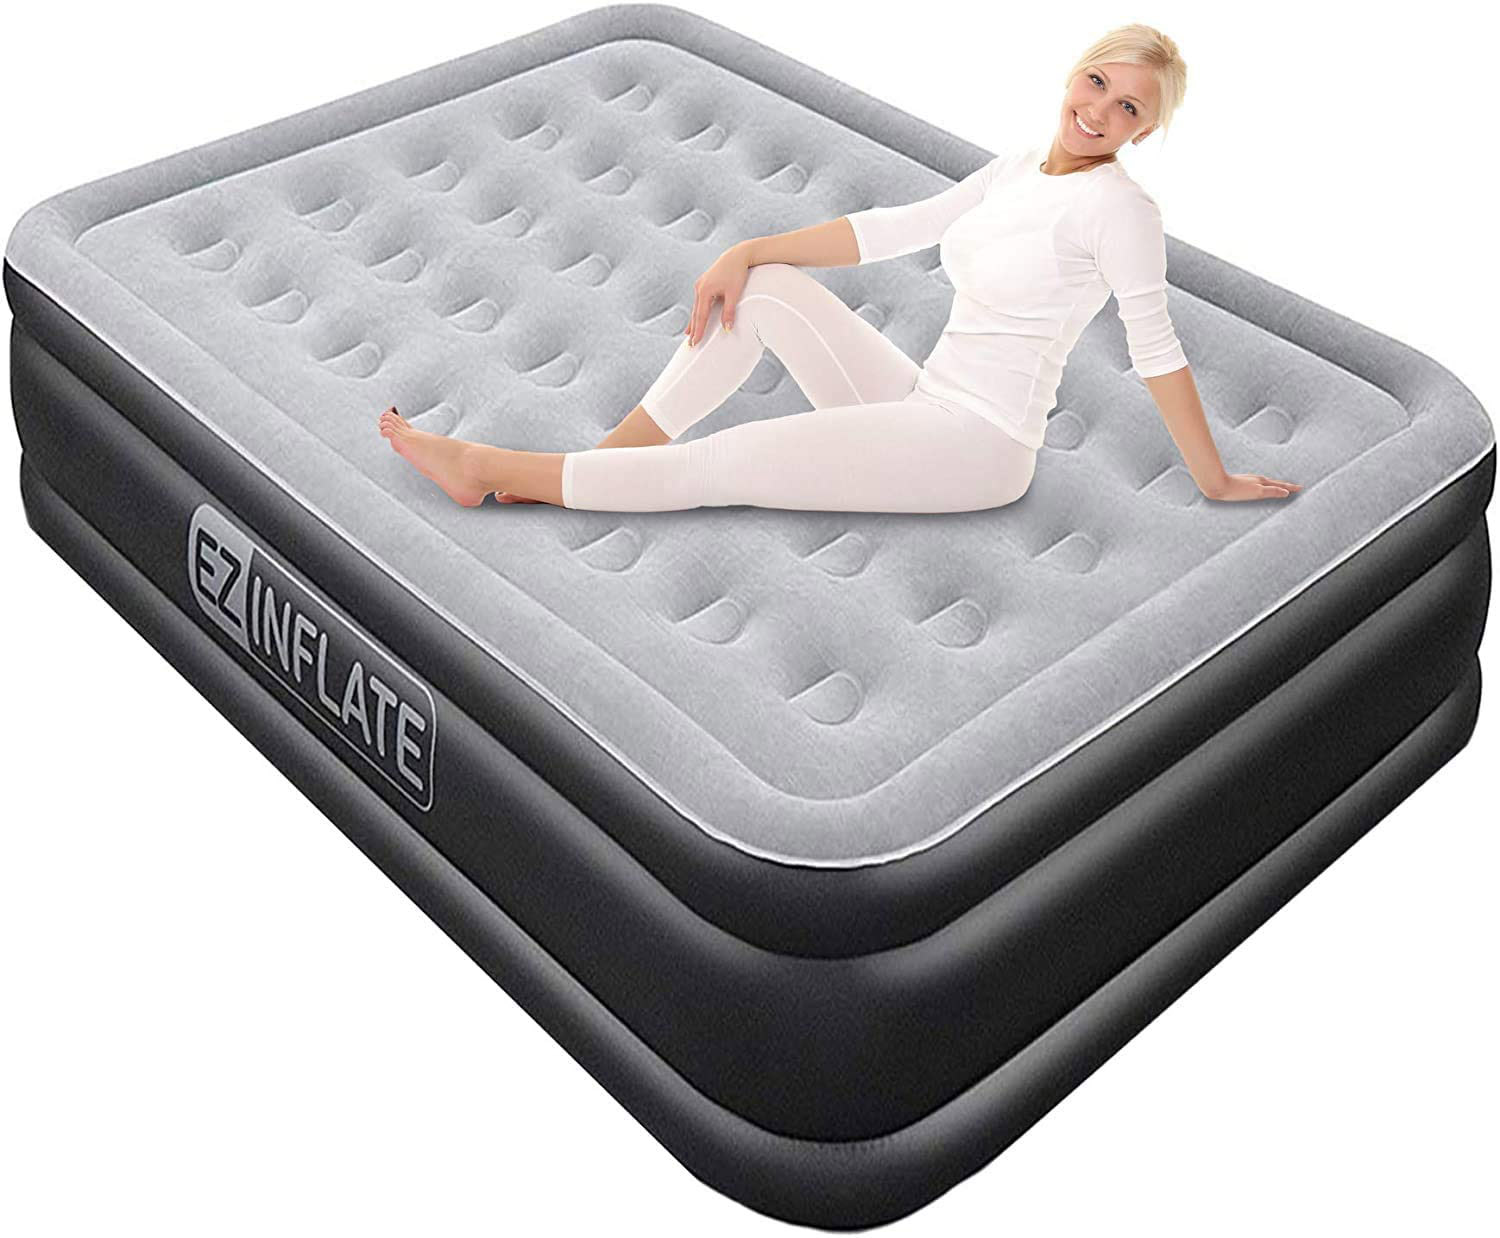 4 foot wide air mattress